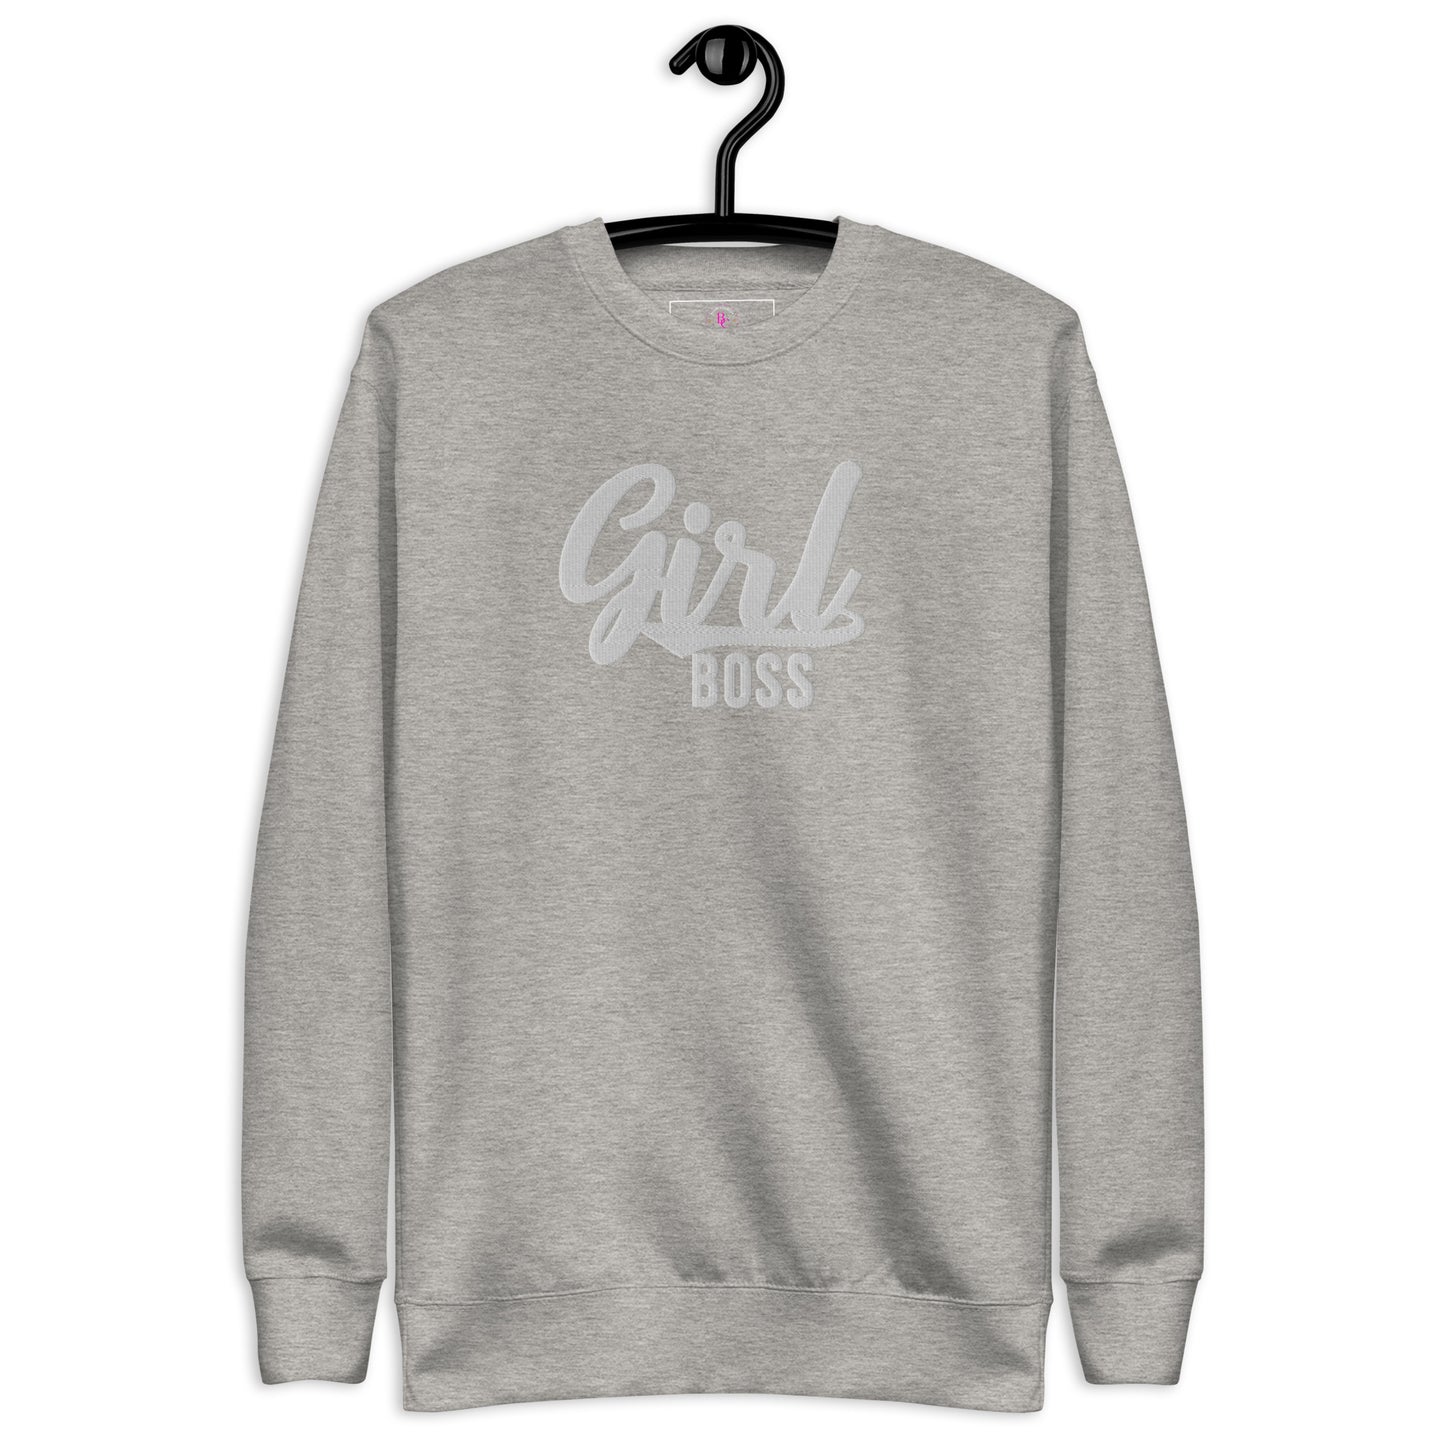 Girl Boss Unisex Premium Sweatshirt